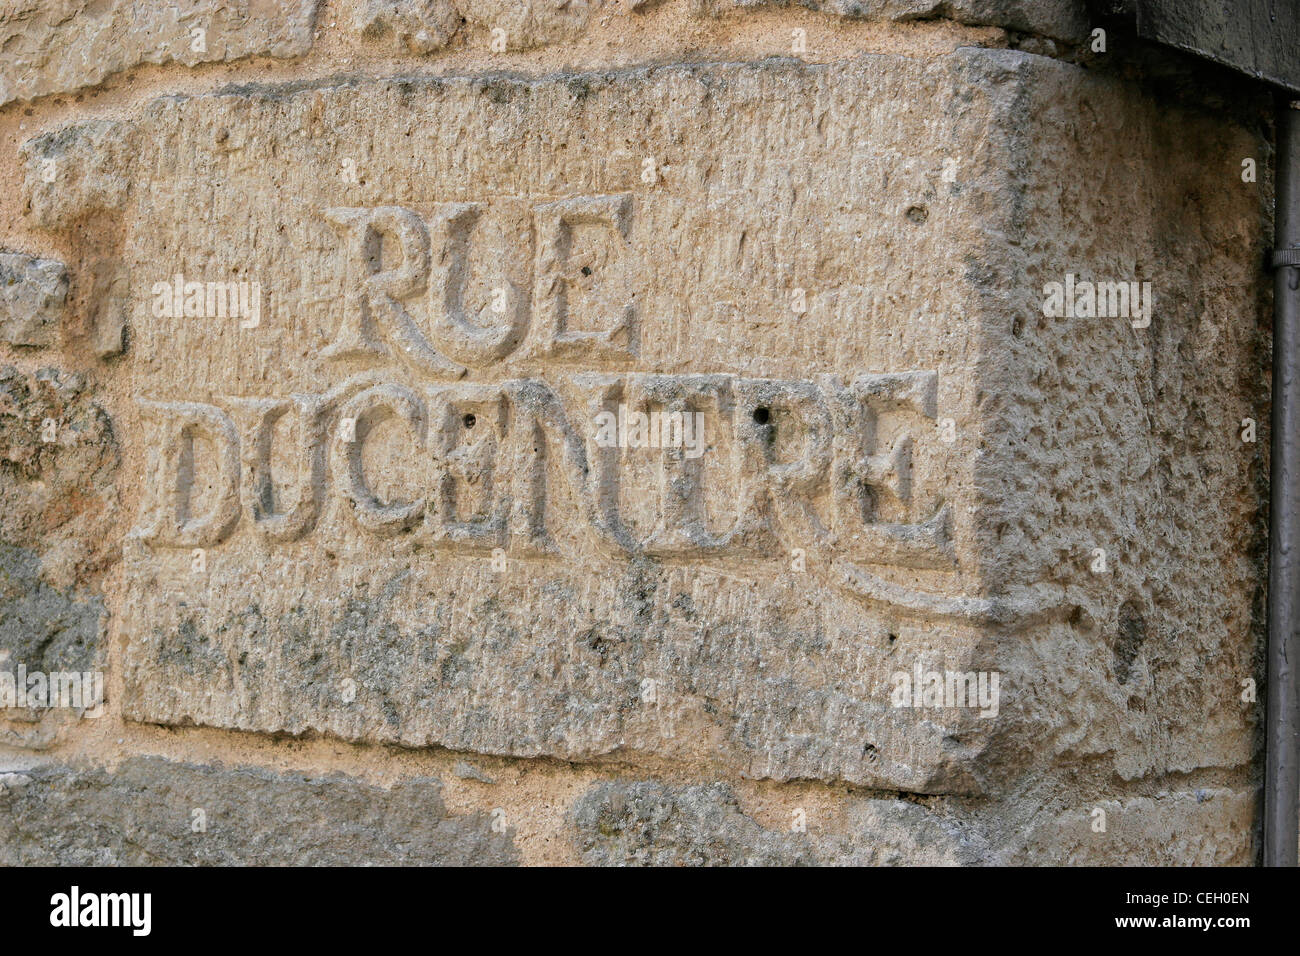 Inscription sur la pierre d'angle à Flavigny-sur-Ozerain, accueil de l'Anis de l'Abbaye de Flavigny - usine d'anis Banque D'Images